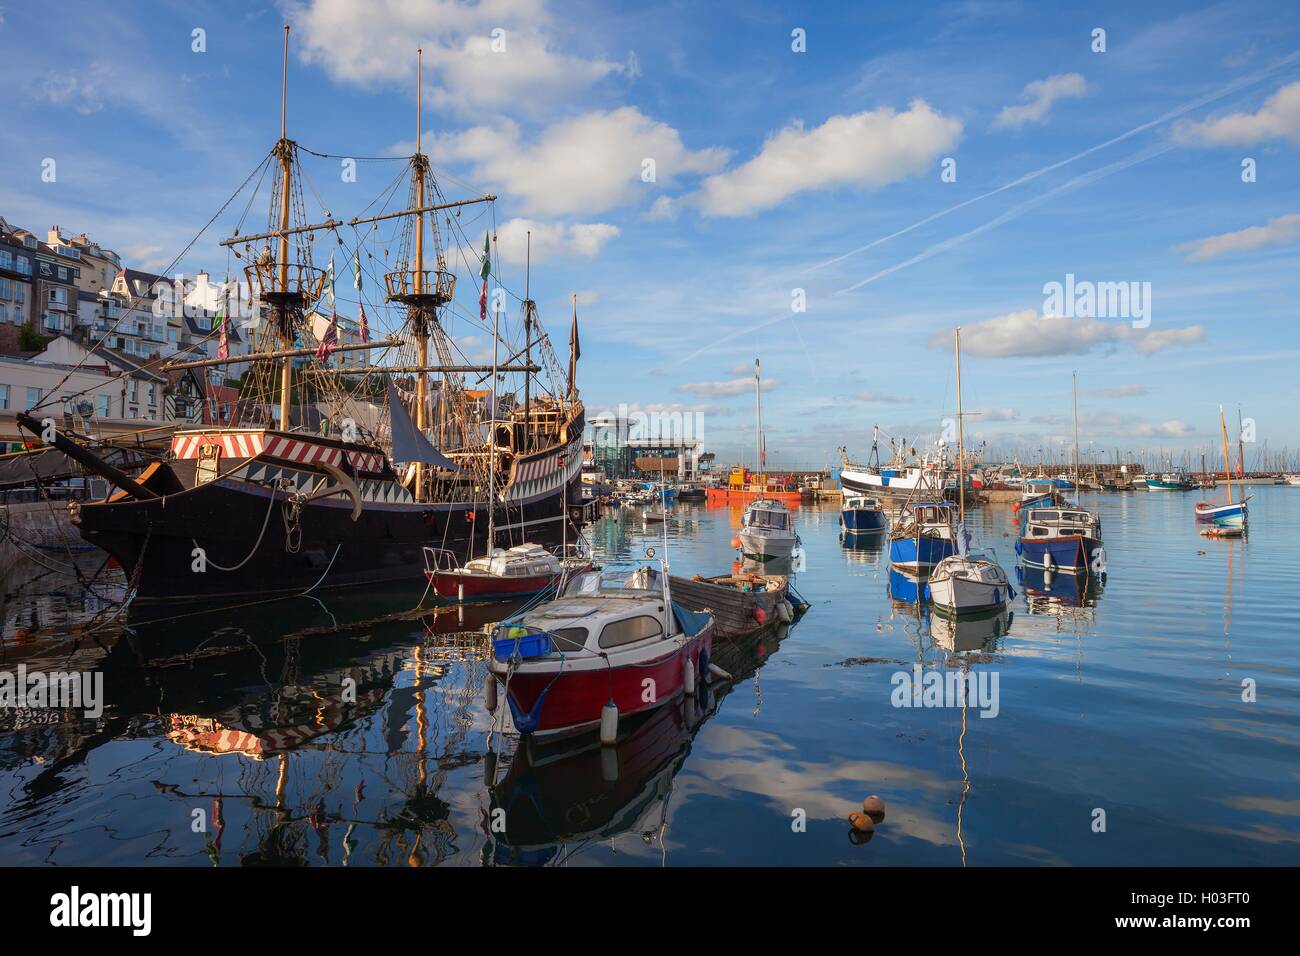 Brixham harbour, Devon, England Stock Photo